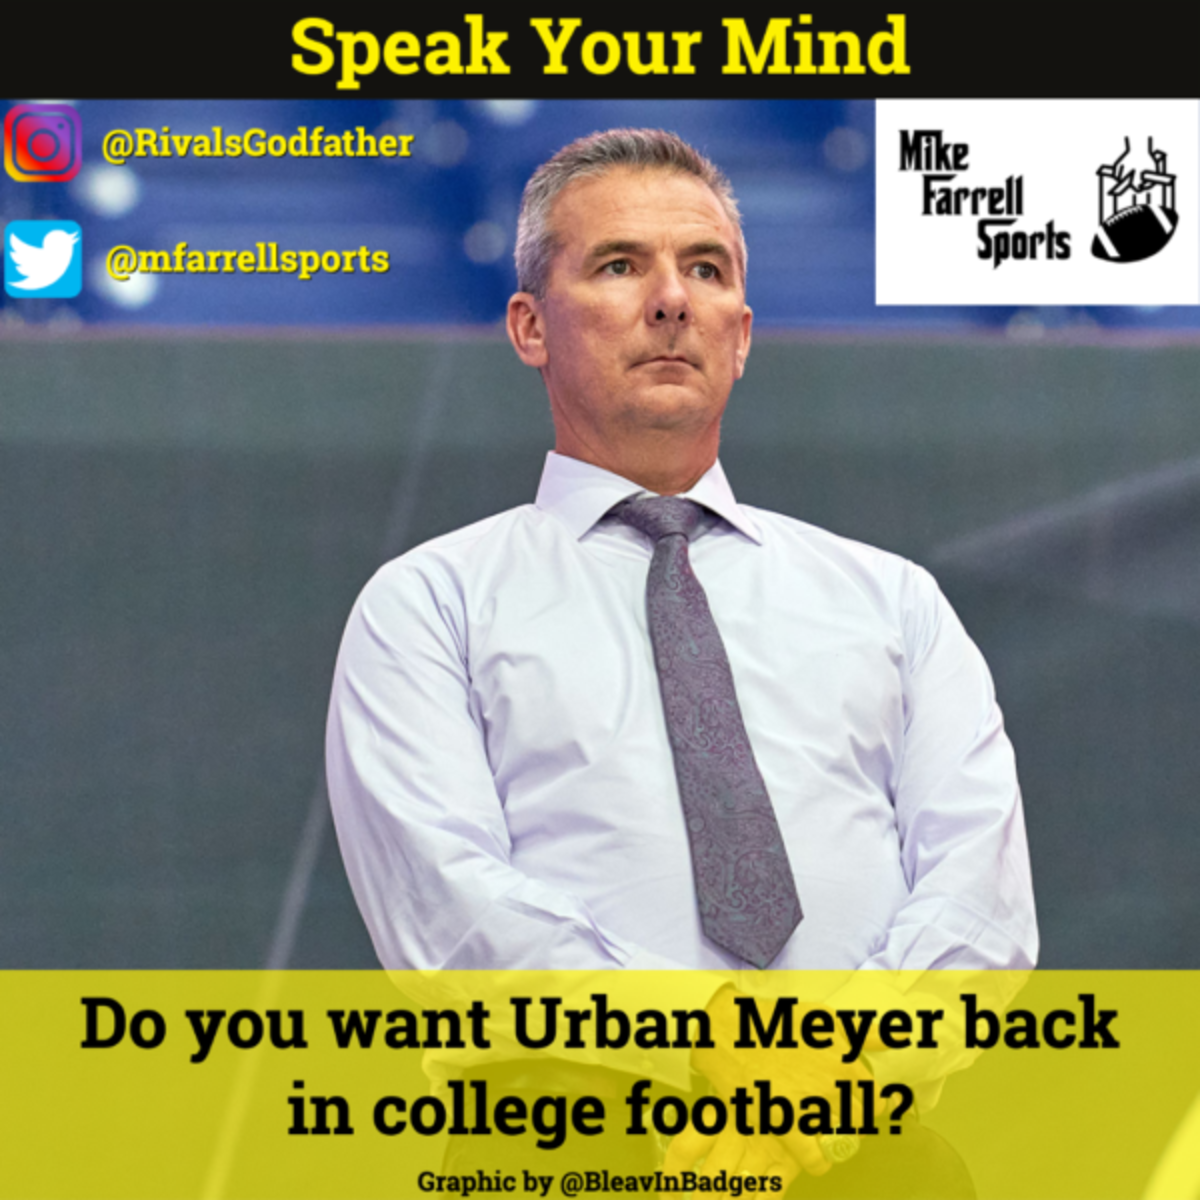 Speak Your Mind - Urban Meyer